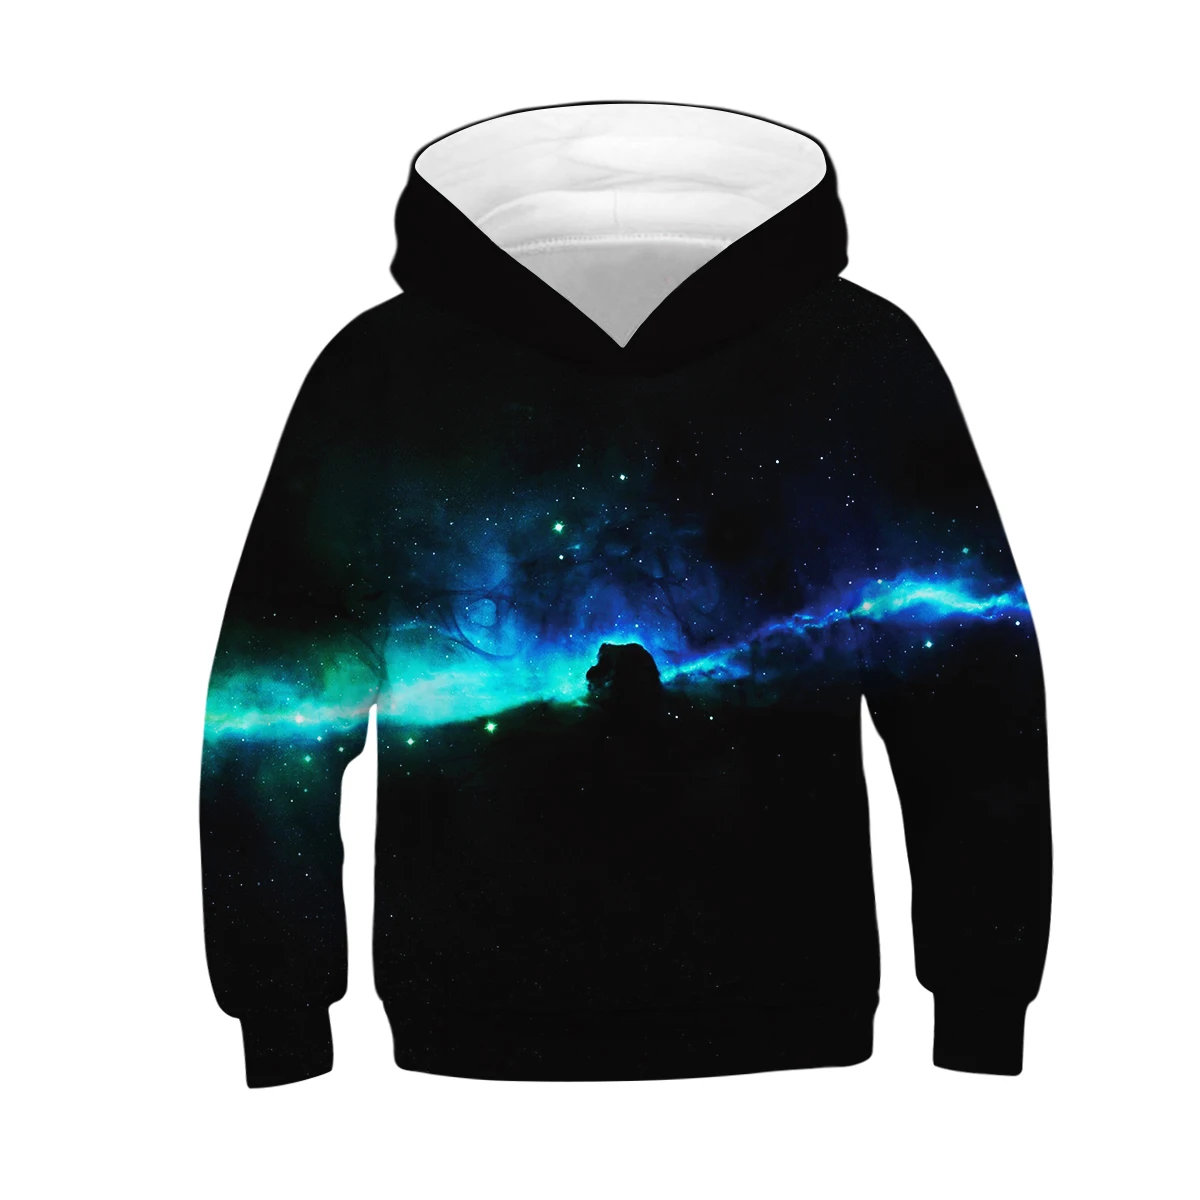 Г. Толстовки для мальчиков-подростков с 3D принтом звездного неба Детский свитер для девочек, пуловер черные детские толстовки с капюшоном Одежда для маленьких мальчиков, верхняя одежда